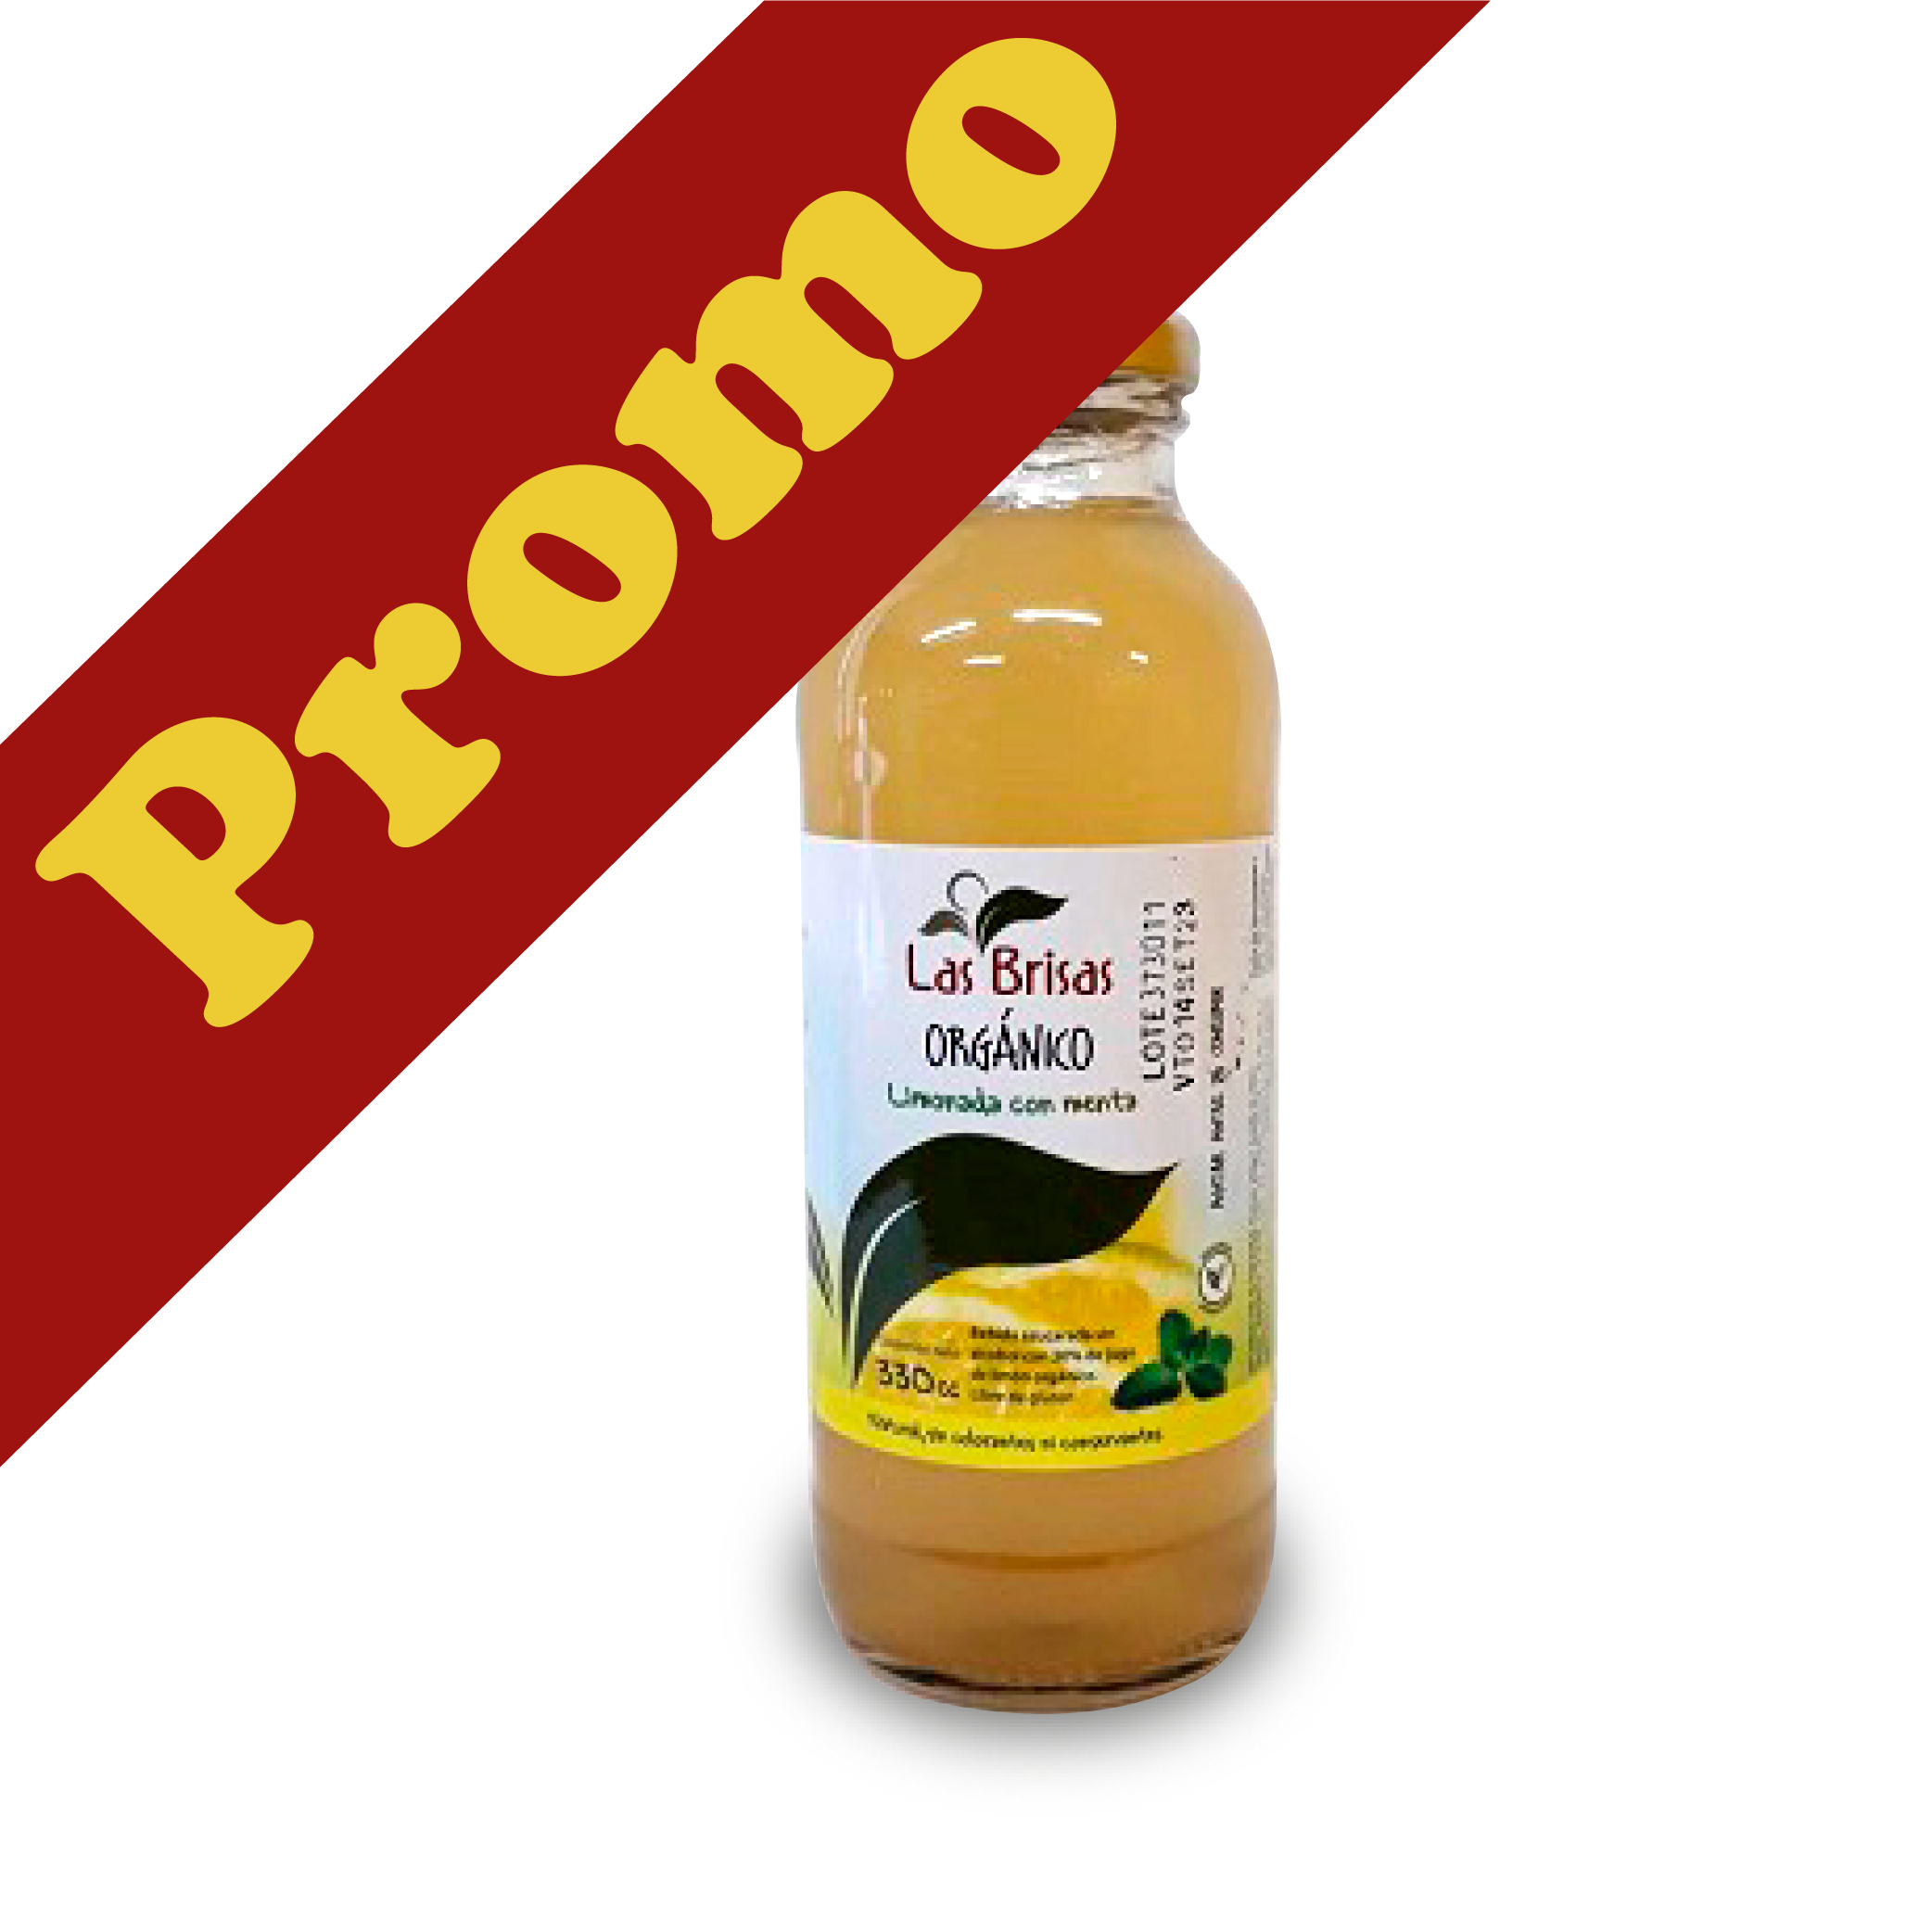 Las Brisas-Jugo Organico Limon-Menta PROMO 3 x 330 cc